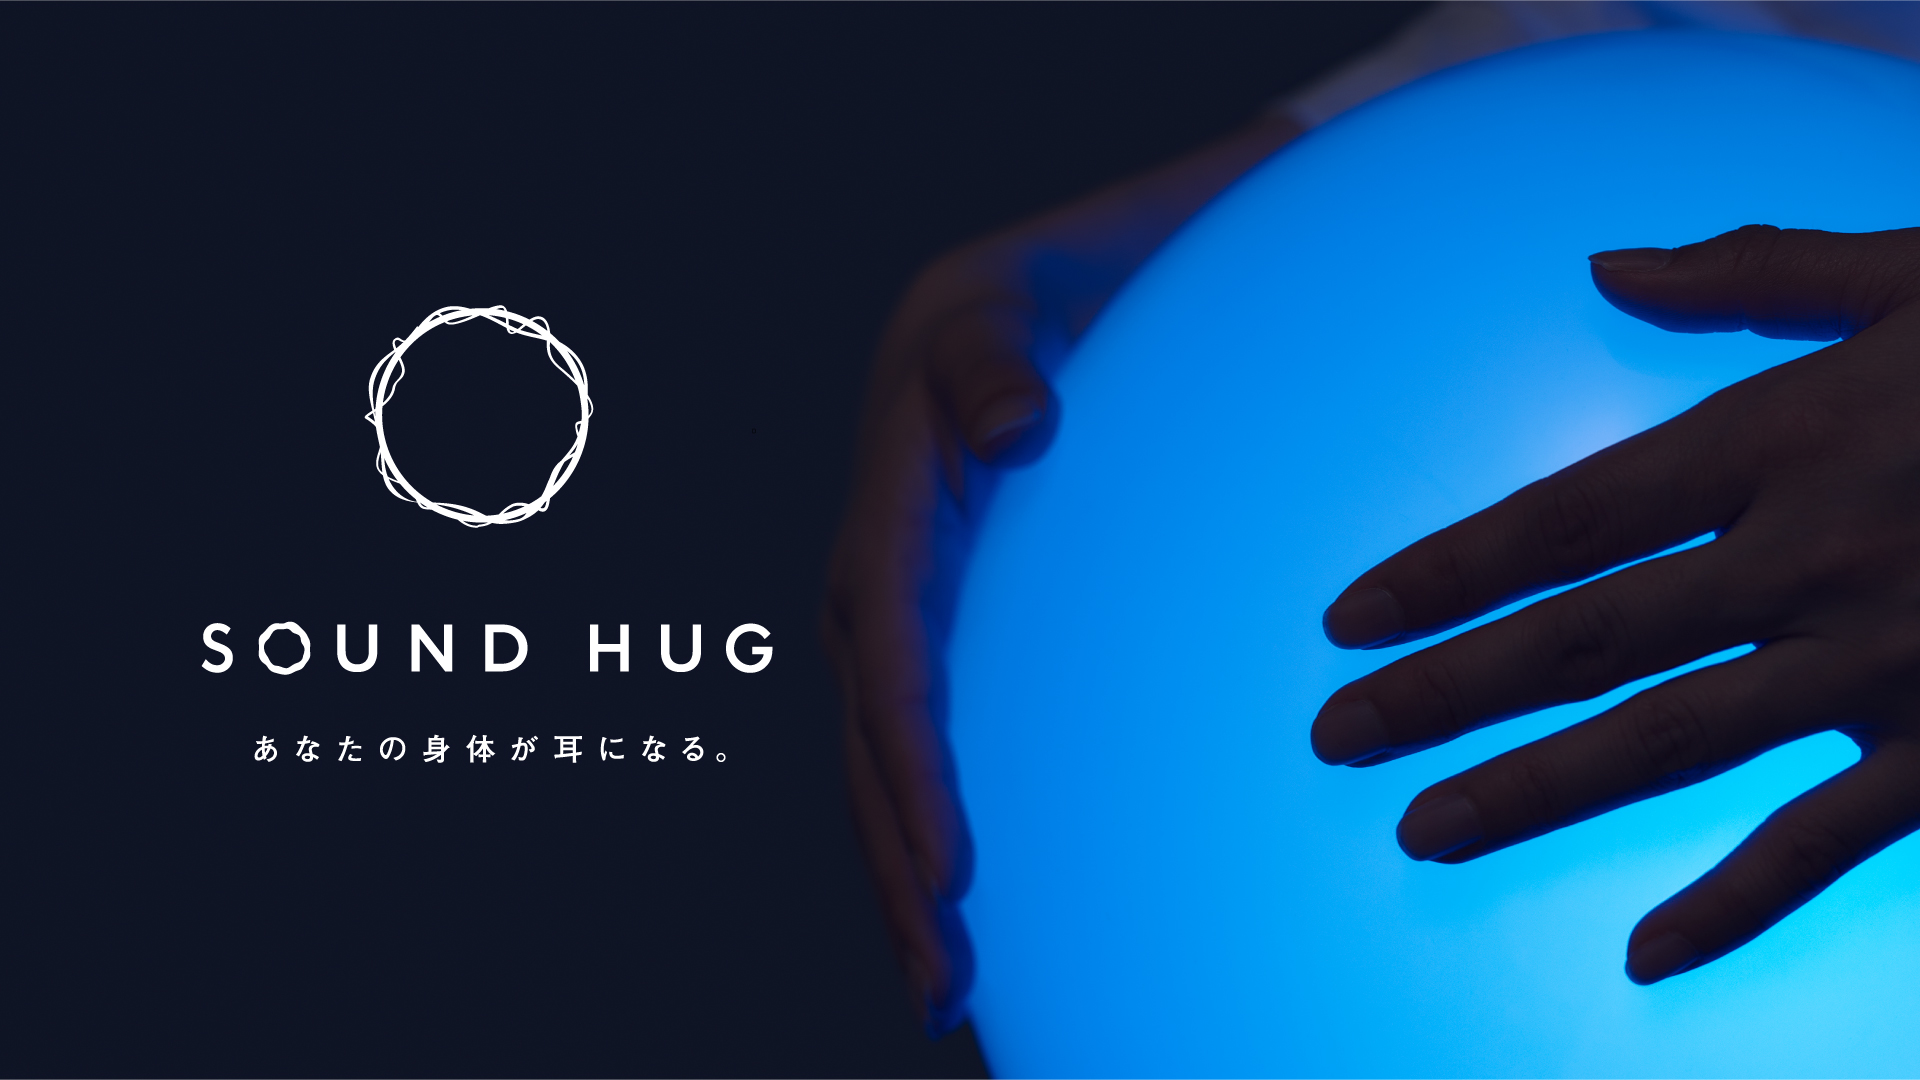 博報堂、落合陽一氏率いるピクシーダストテクノロジーズで共同であらゆる人に音楽を届けるためのデバイス「SOUND HUG™」の 法人向けレンタルサービス開始